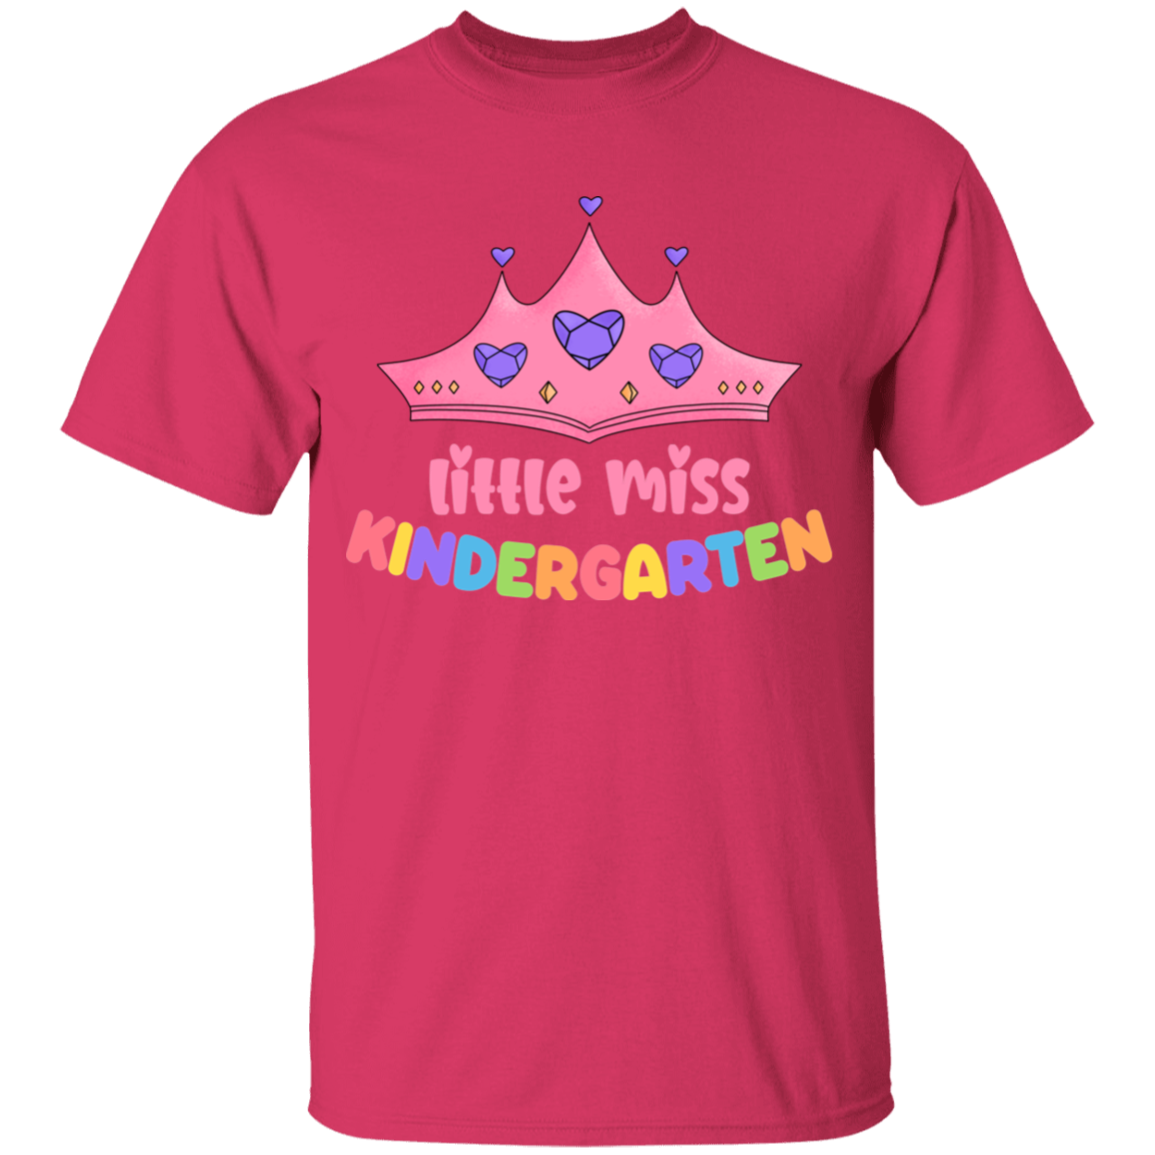 Little Miss Kindergarten Princess Youth Cotton T-Shirt